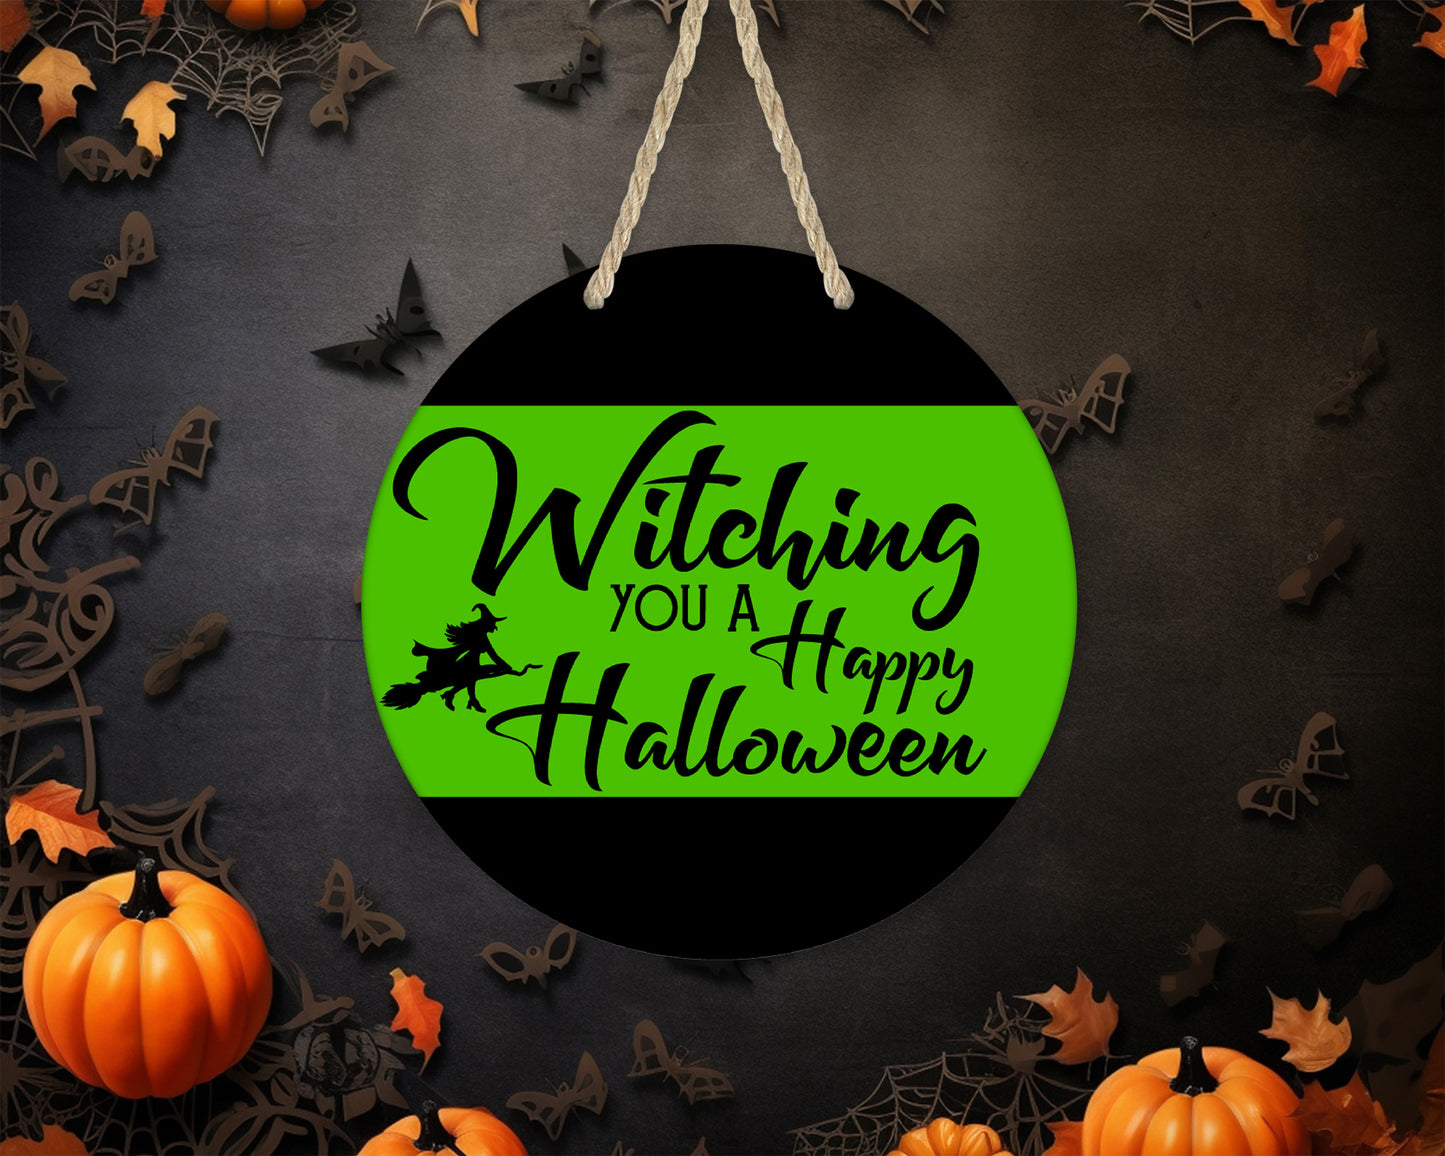 Witching You A Happy Halloween 1 - 10" Round Door Hanger